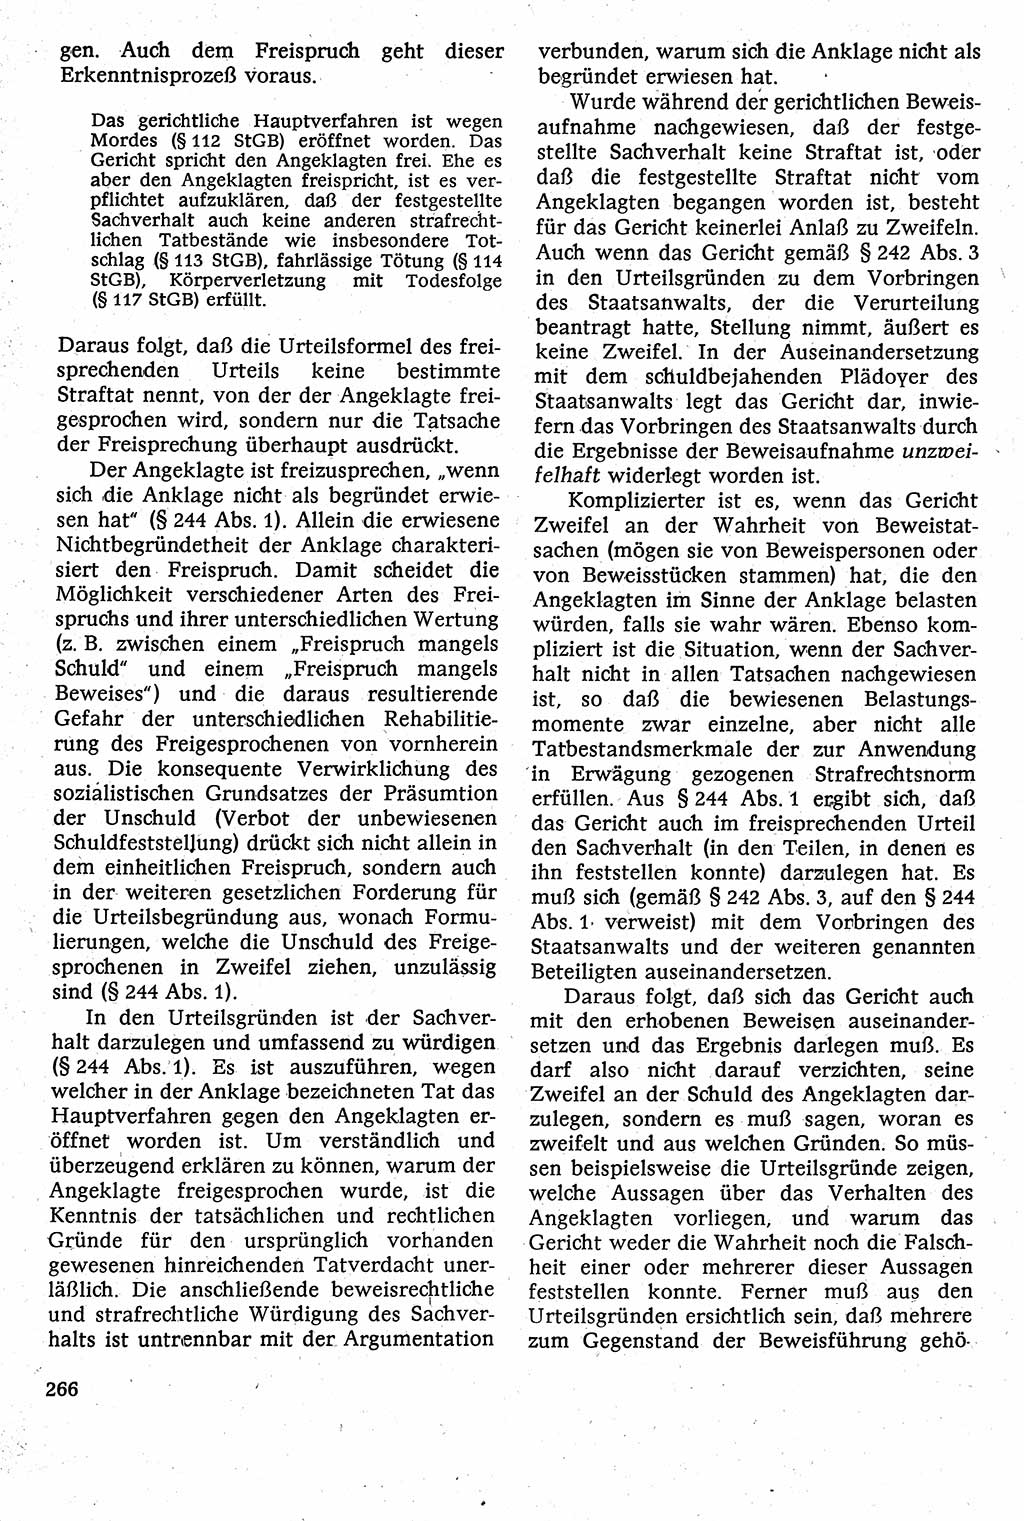 Strafverfahrensrecht [Deutsche Demokratische Republik (DDR)], Lehrbuch 1982, Seite 266 (Strafverf.-R. DDR Lb. 1982, S. 266)